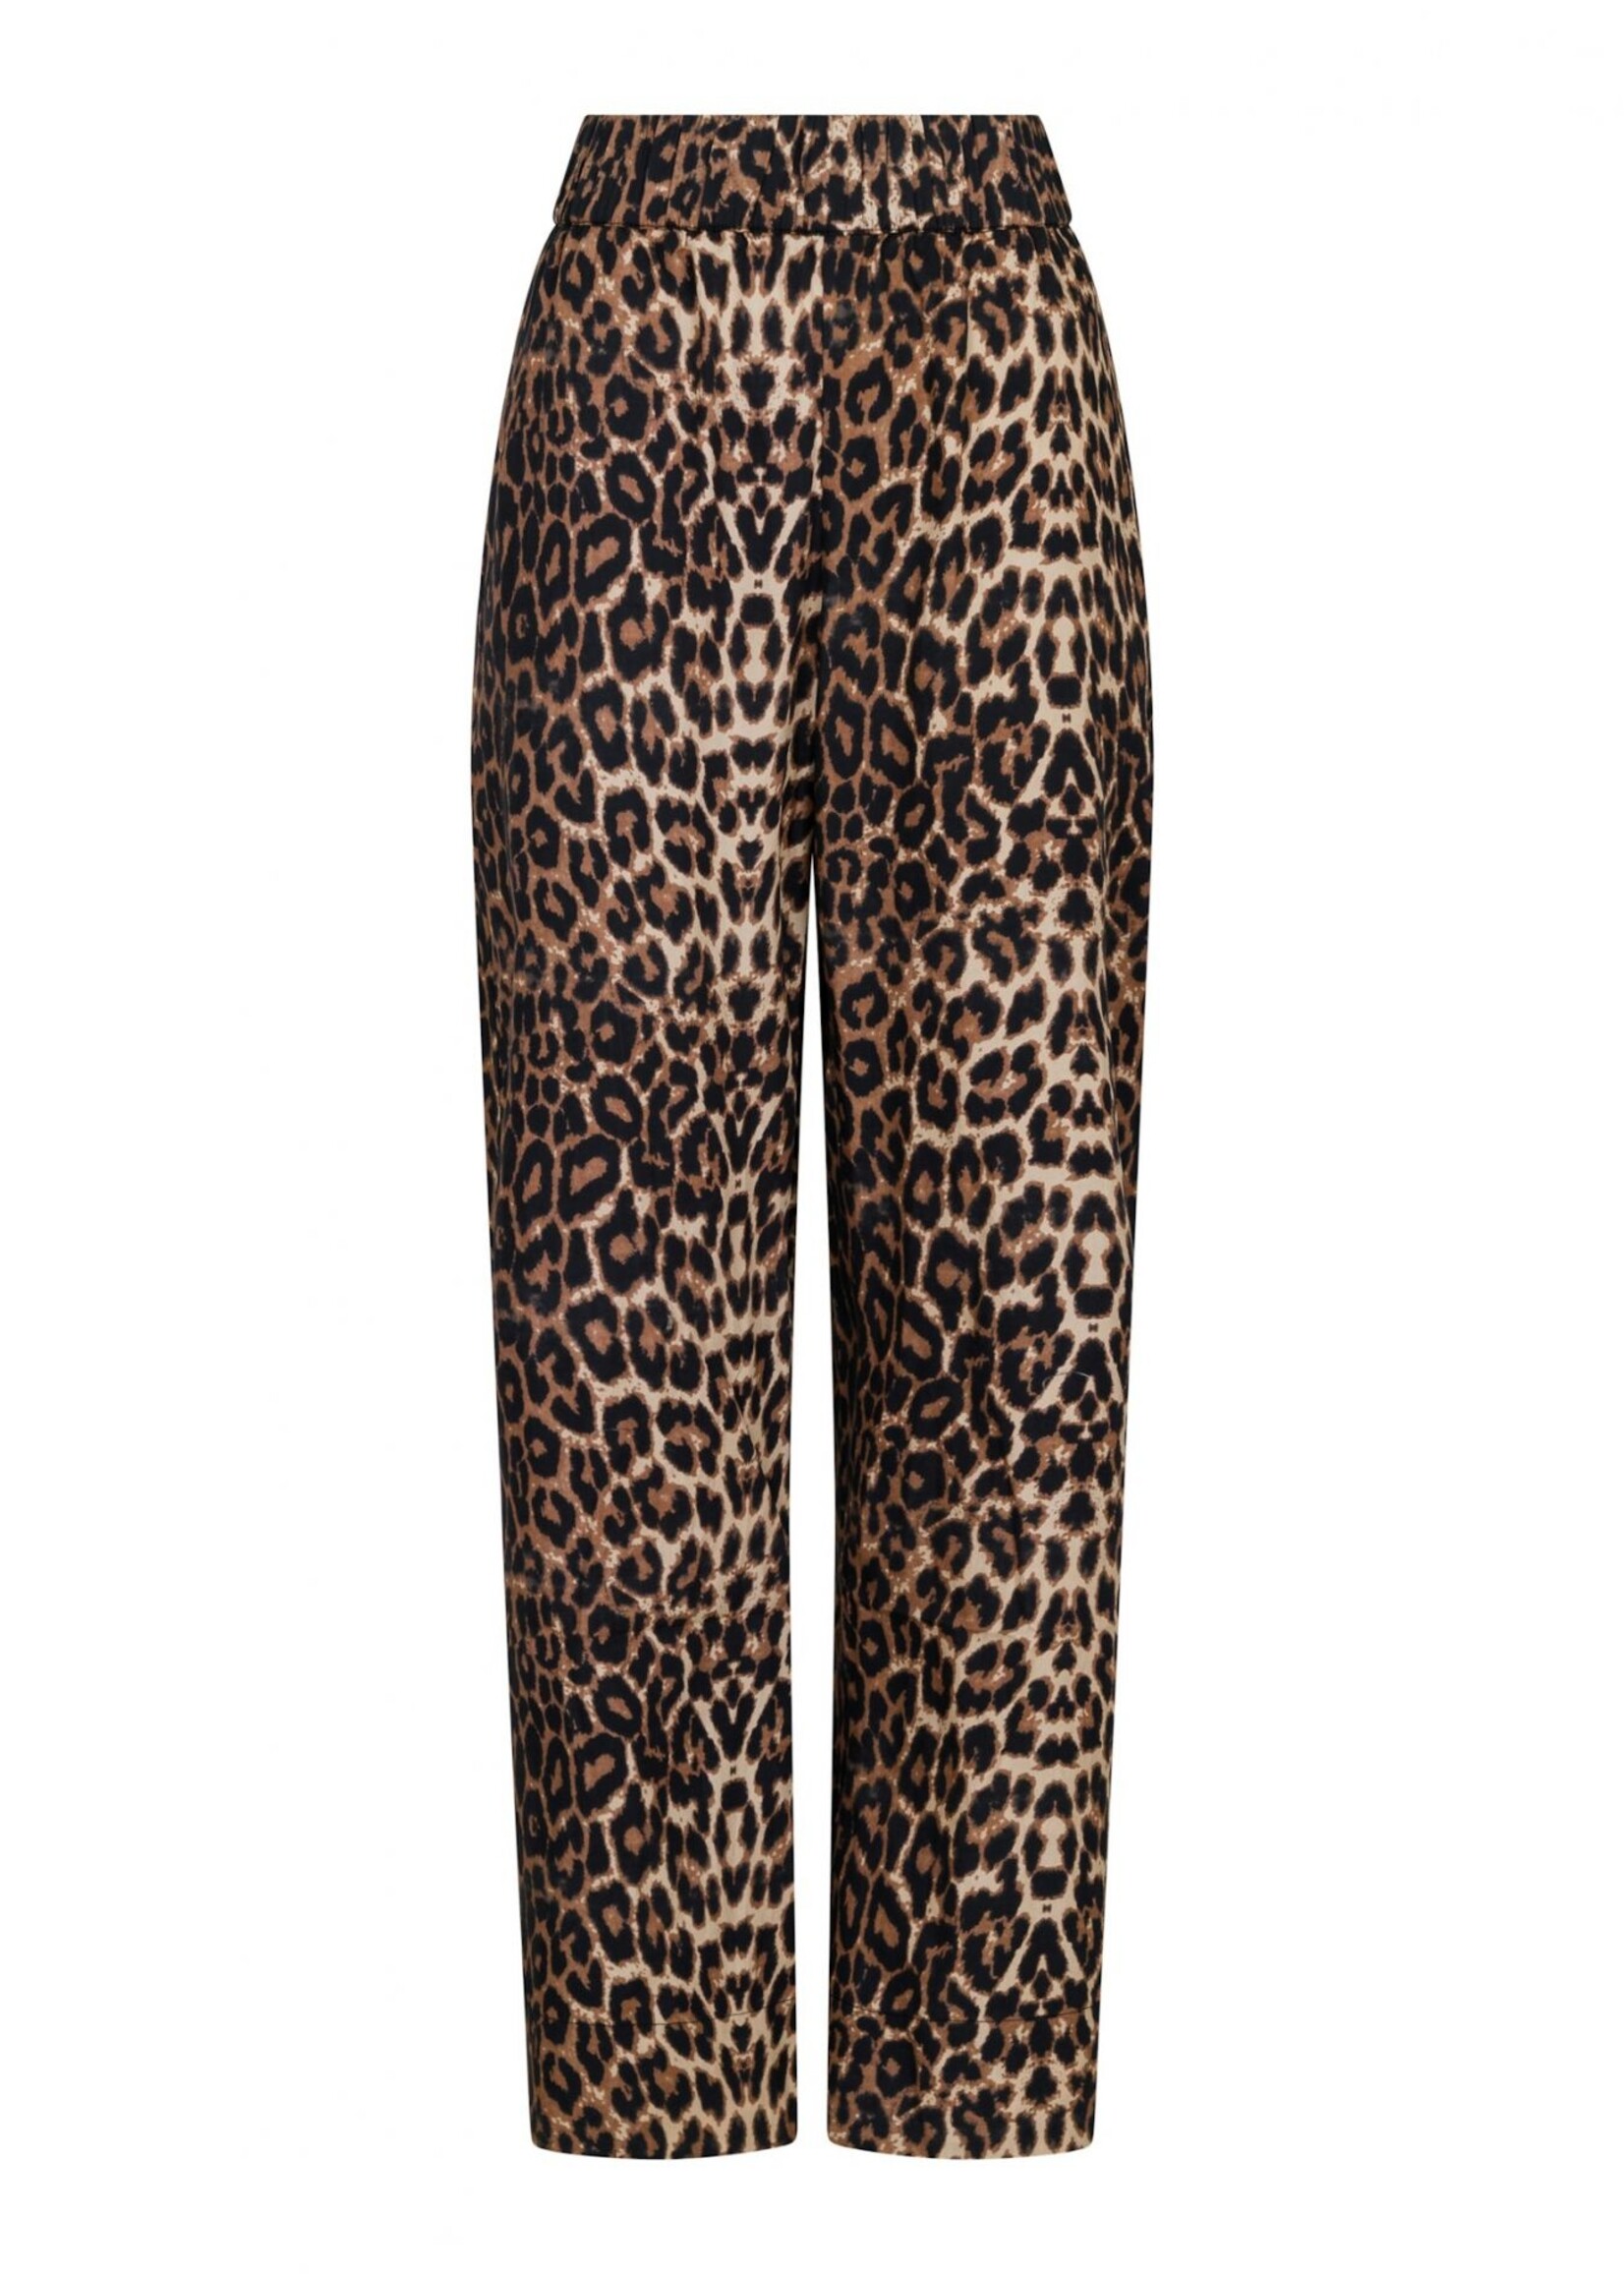 Neo Noir Yana Leo Long Pants - Leopard